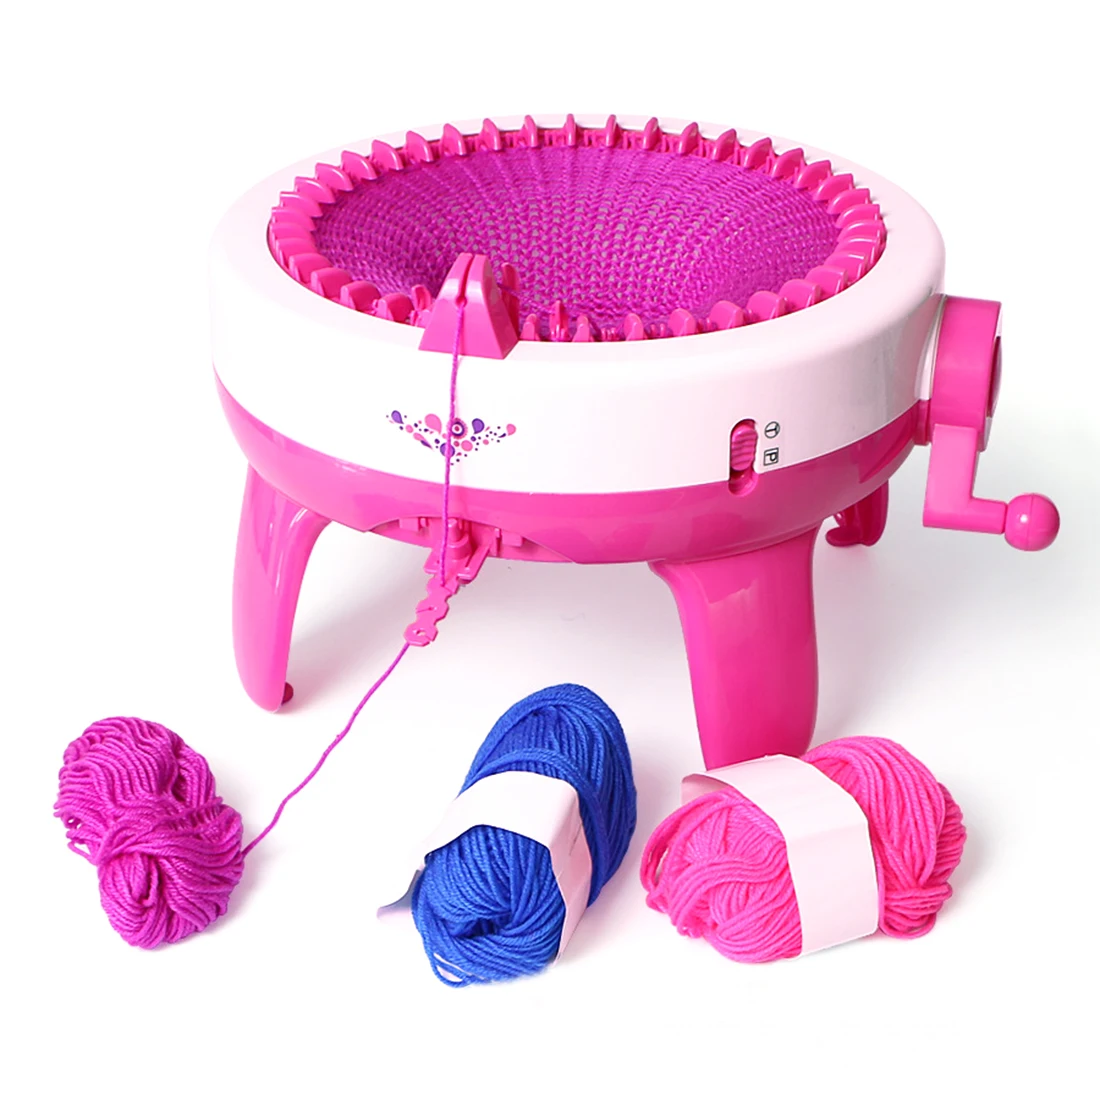 Новые популярные 40 игл дети ролевые игры игрушки ручная вязальная машина для поделок ткацкий станок для шарфа шляпа-Розовый L